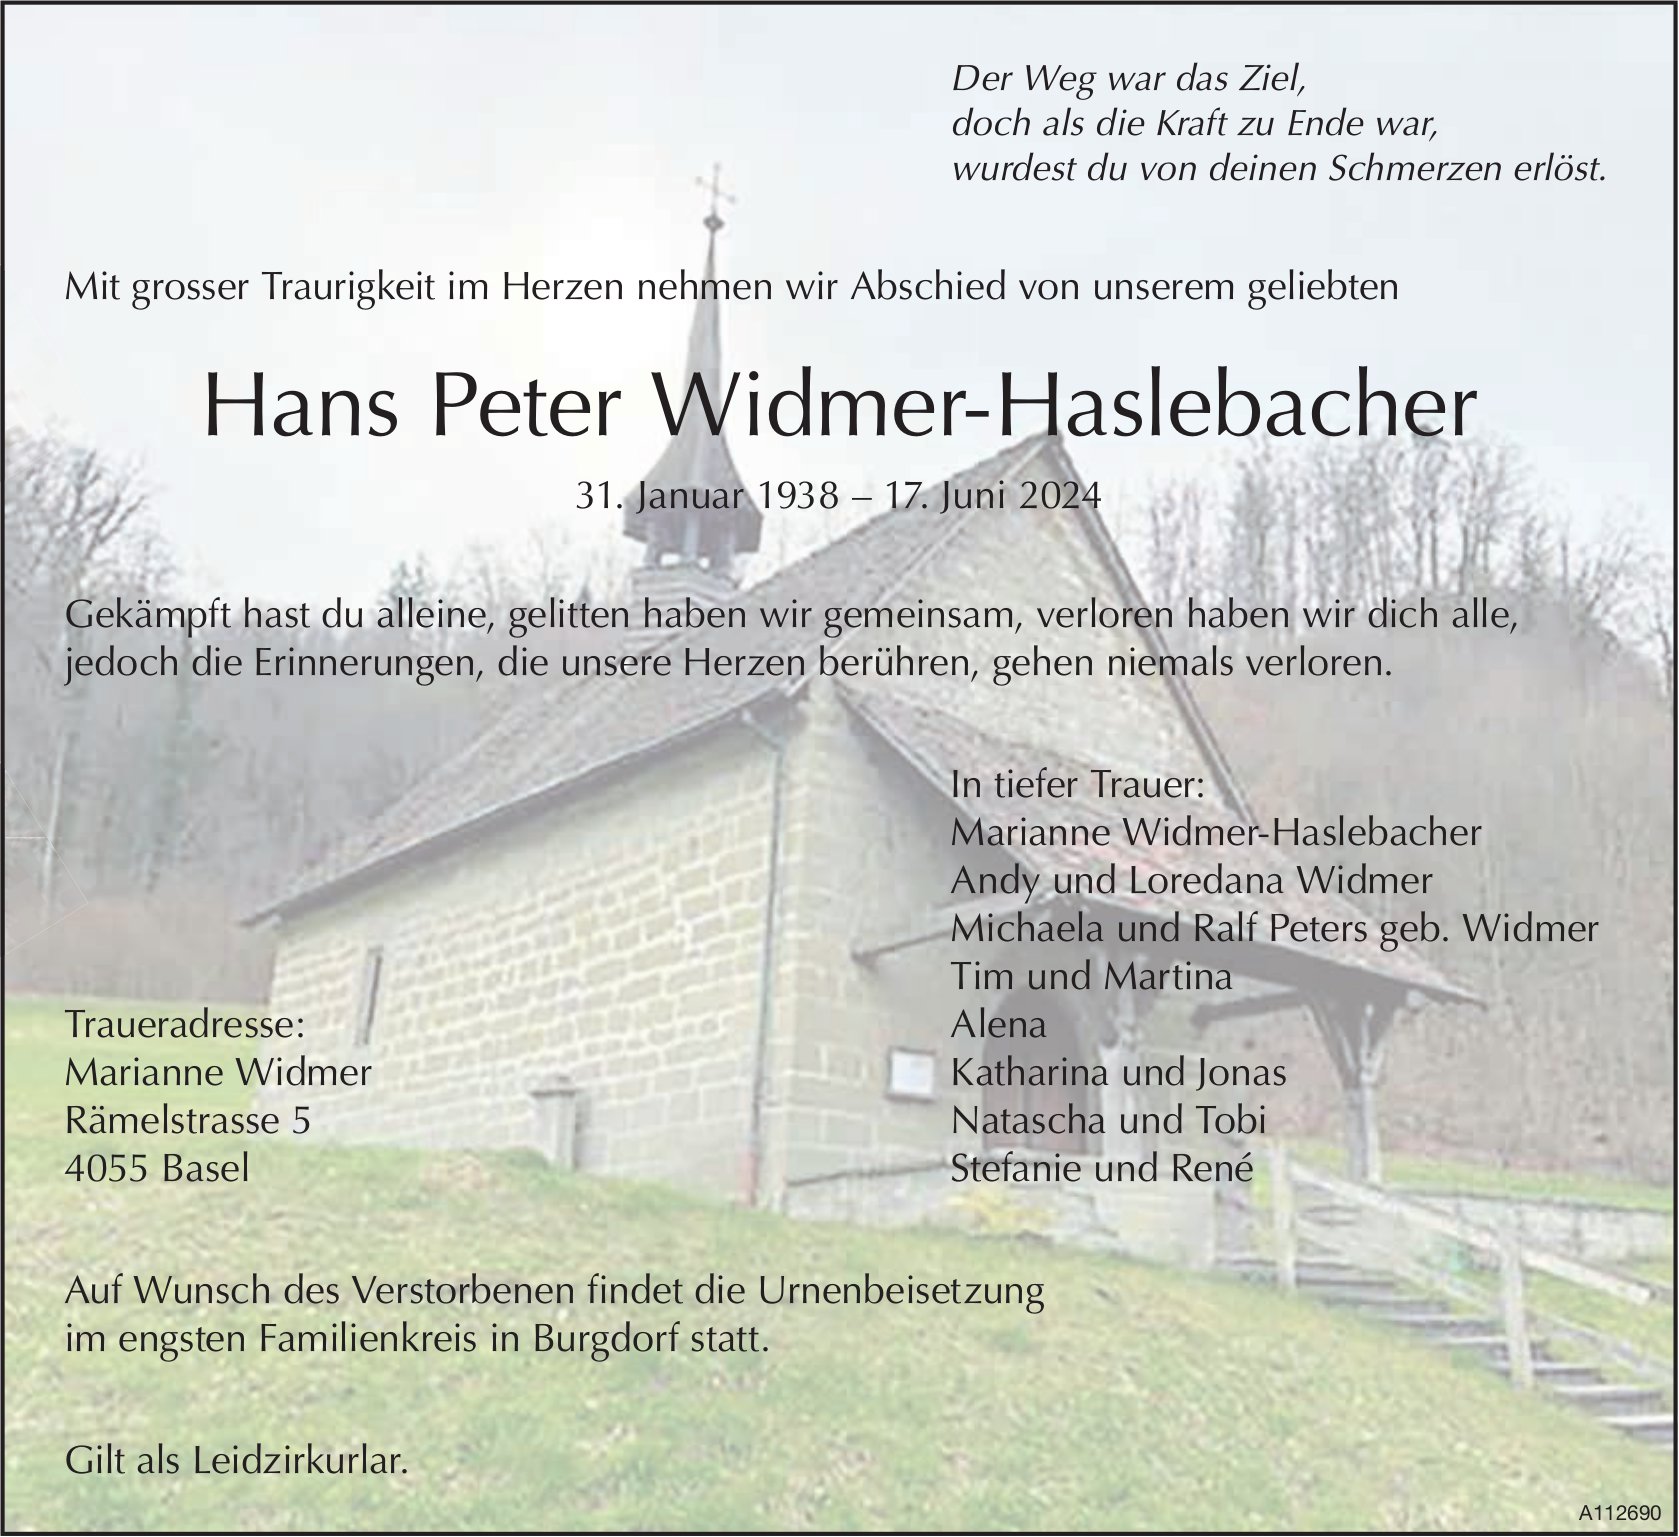 Hans Peter Widmer-Haslebacher, Juni 2024 / TA